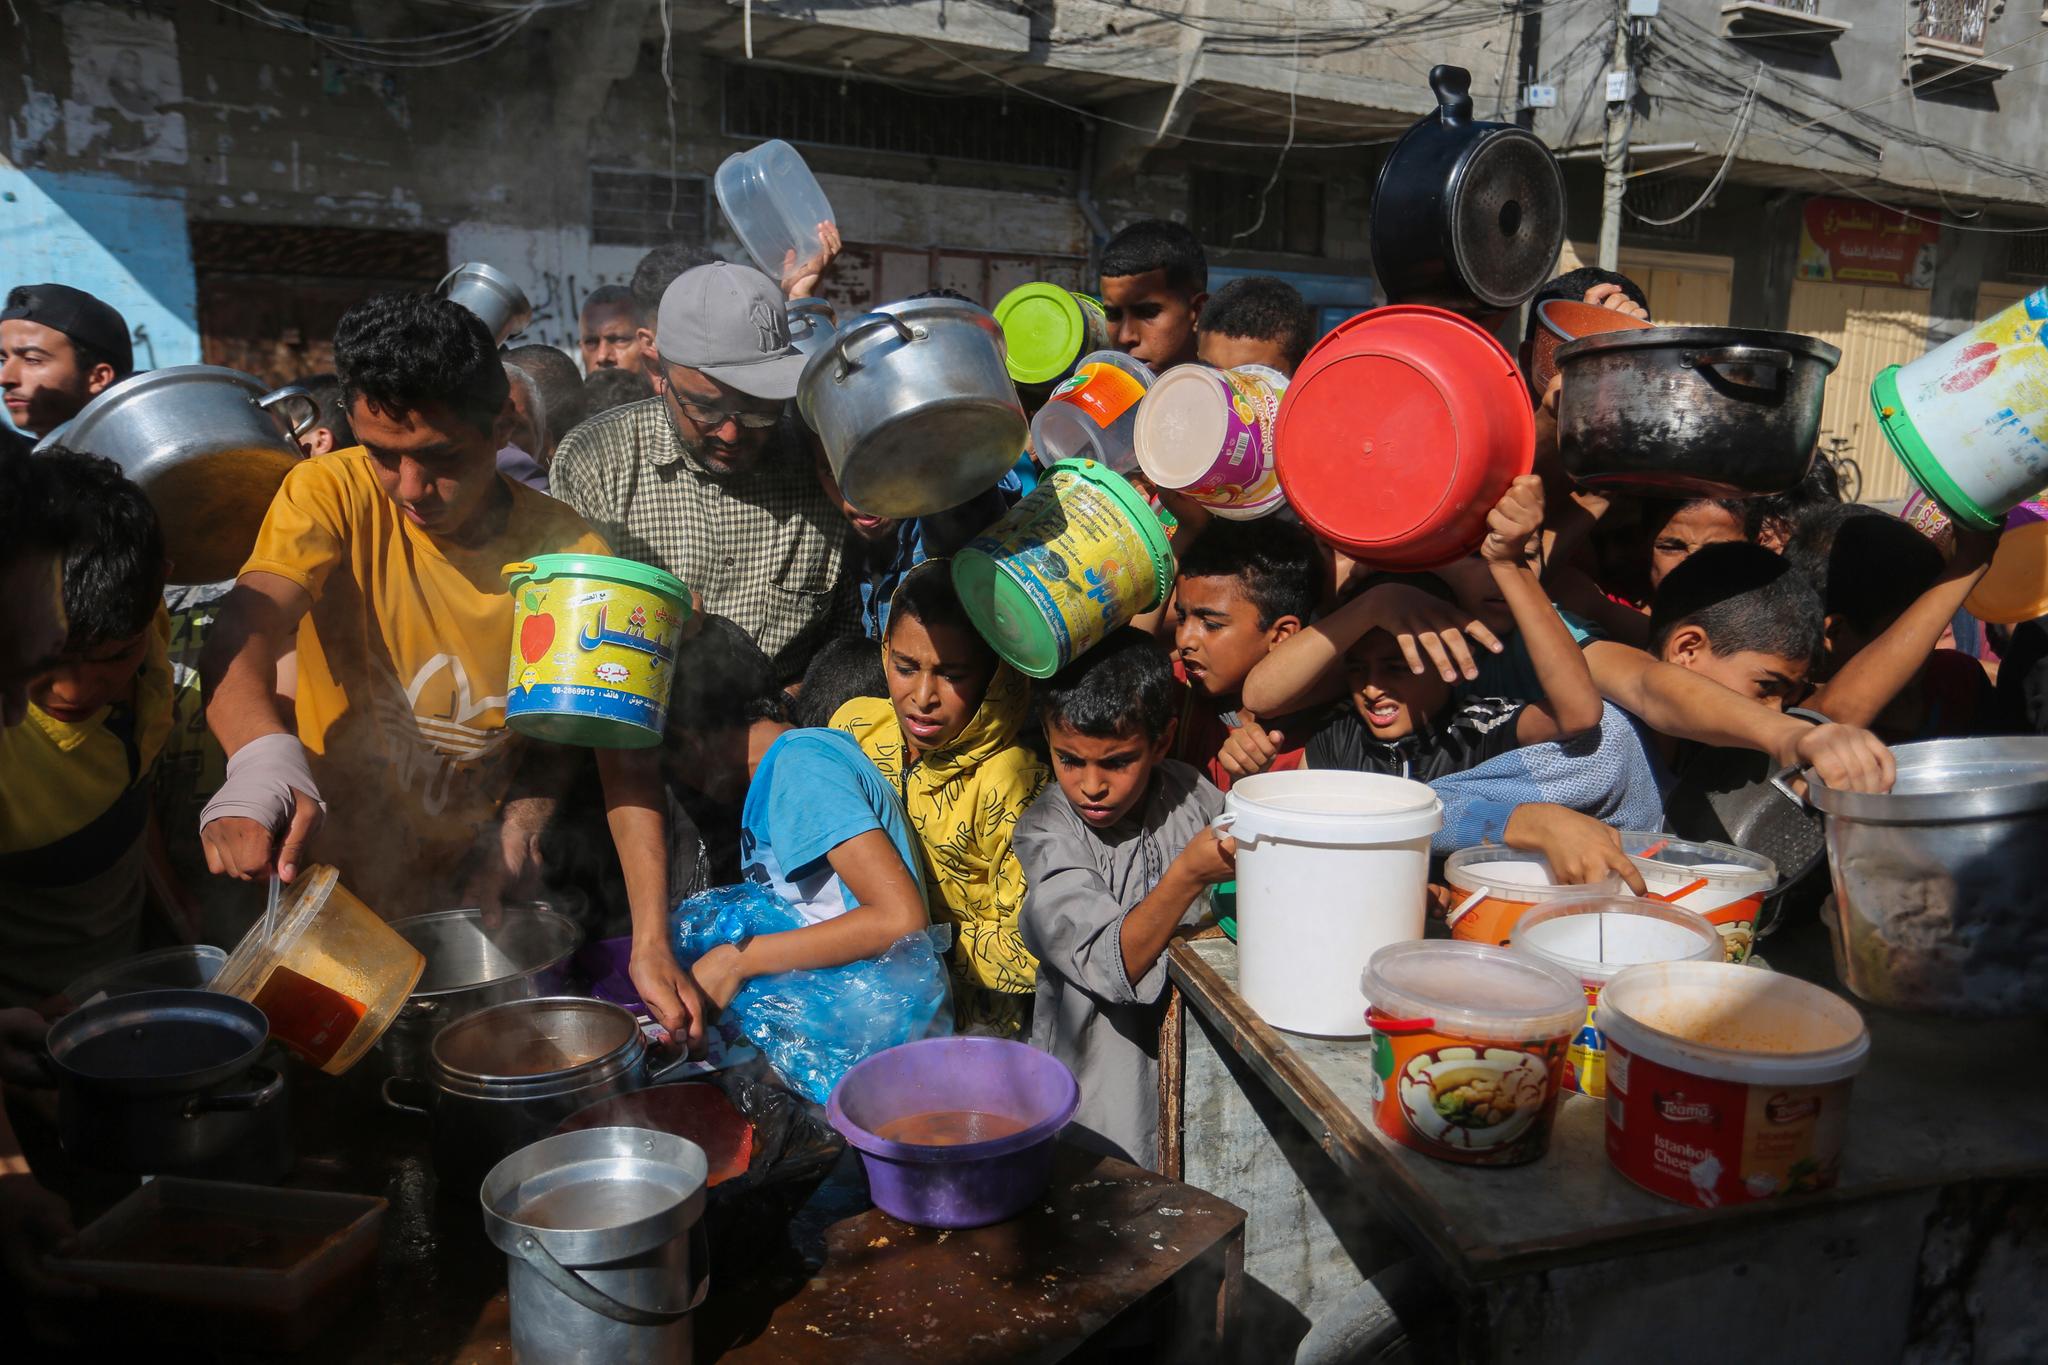 Halvparten av Gazas befolkning på over 2,3 millioner opplever katastrofal sult, og faren for hungersnød er spesielt overhengende i nord, ifølge FN.